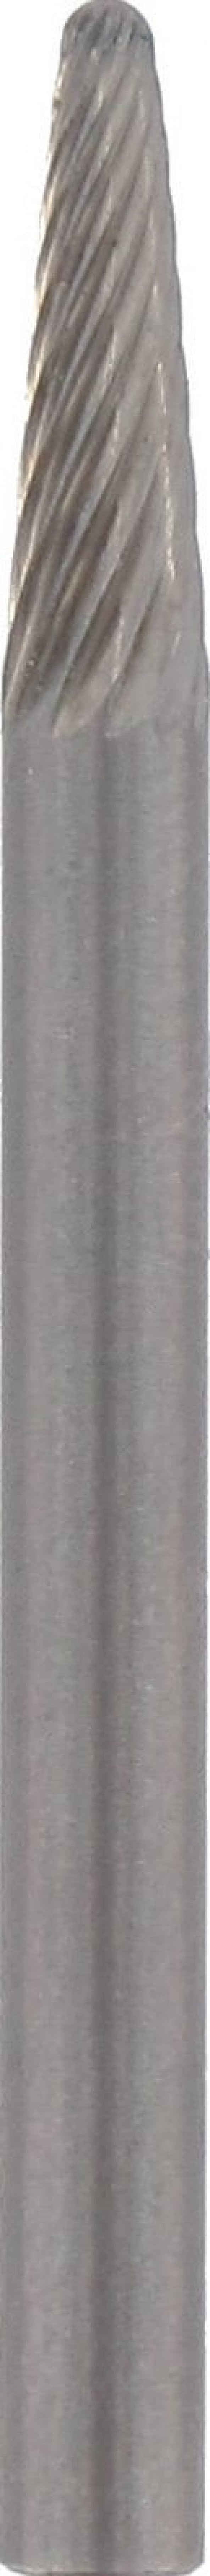 DREMEL® Tungsten karpit kesici mızrak uçlu 3,2 mm (9910)